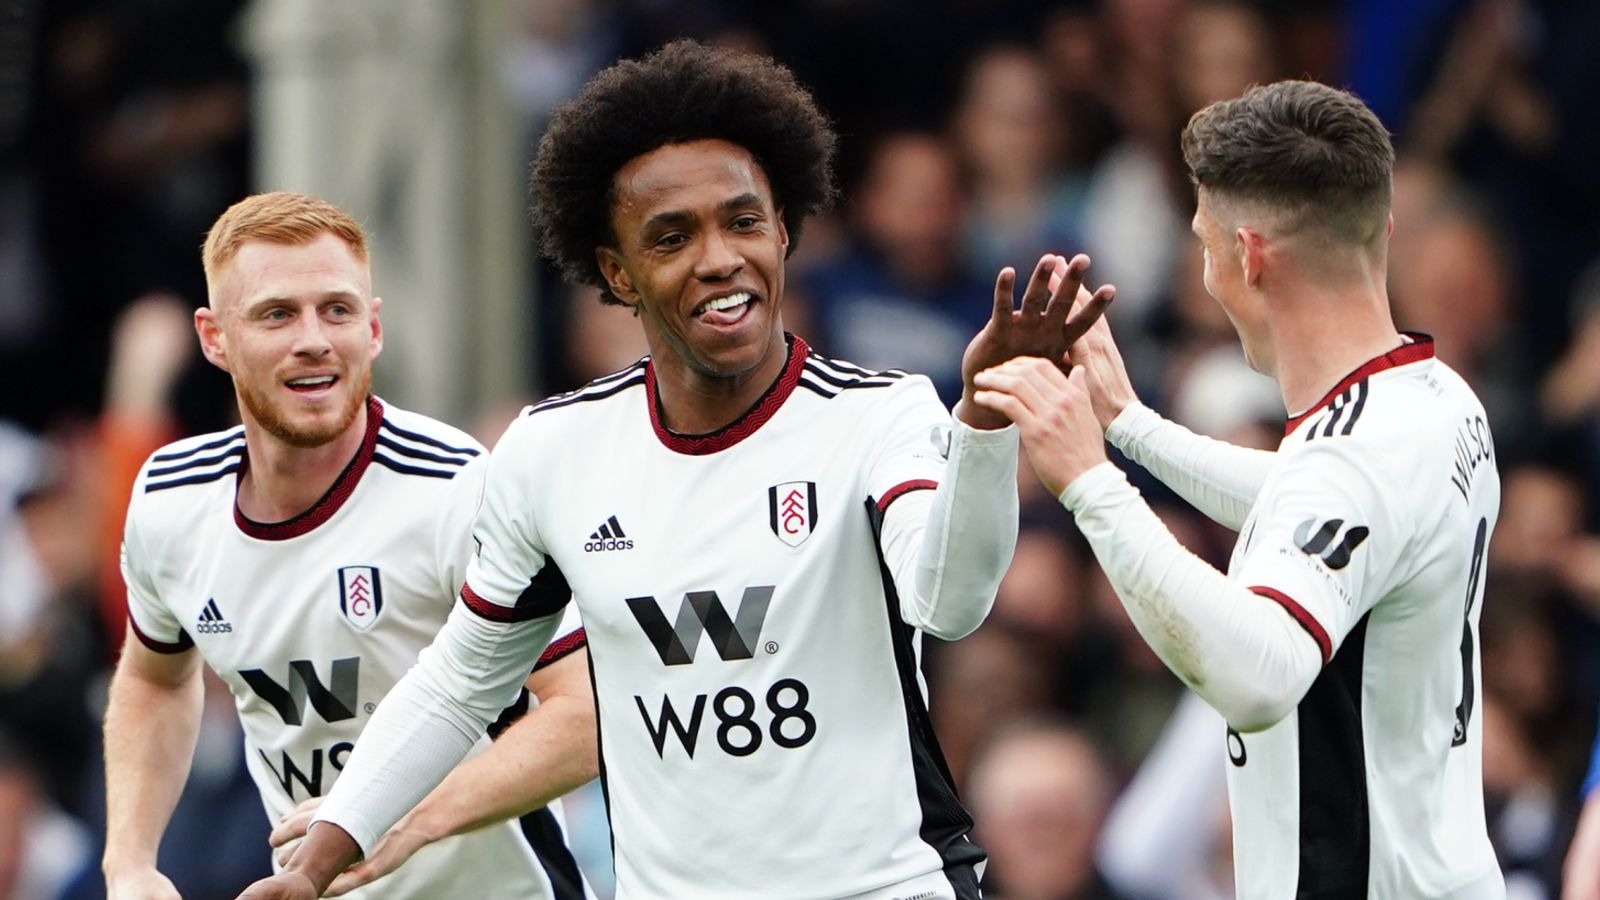 Fulham 5-3 Leicester: Willian inšpiruje hostiteľov k nezabudnuteľnému víťazstvu, keďže obavy Foxes zo zostupu rastú |  Futbalové správy